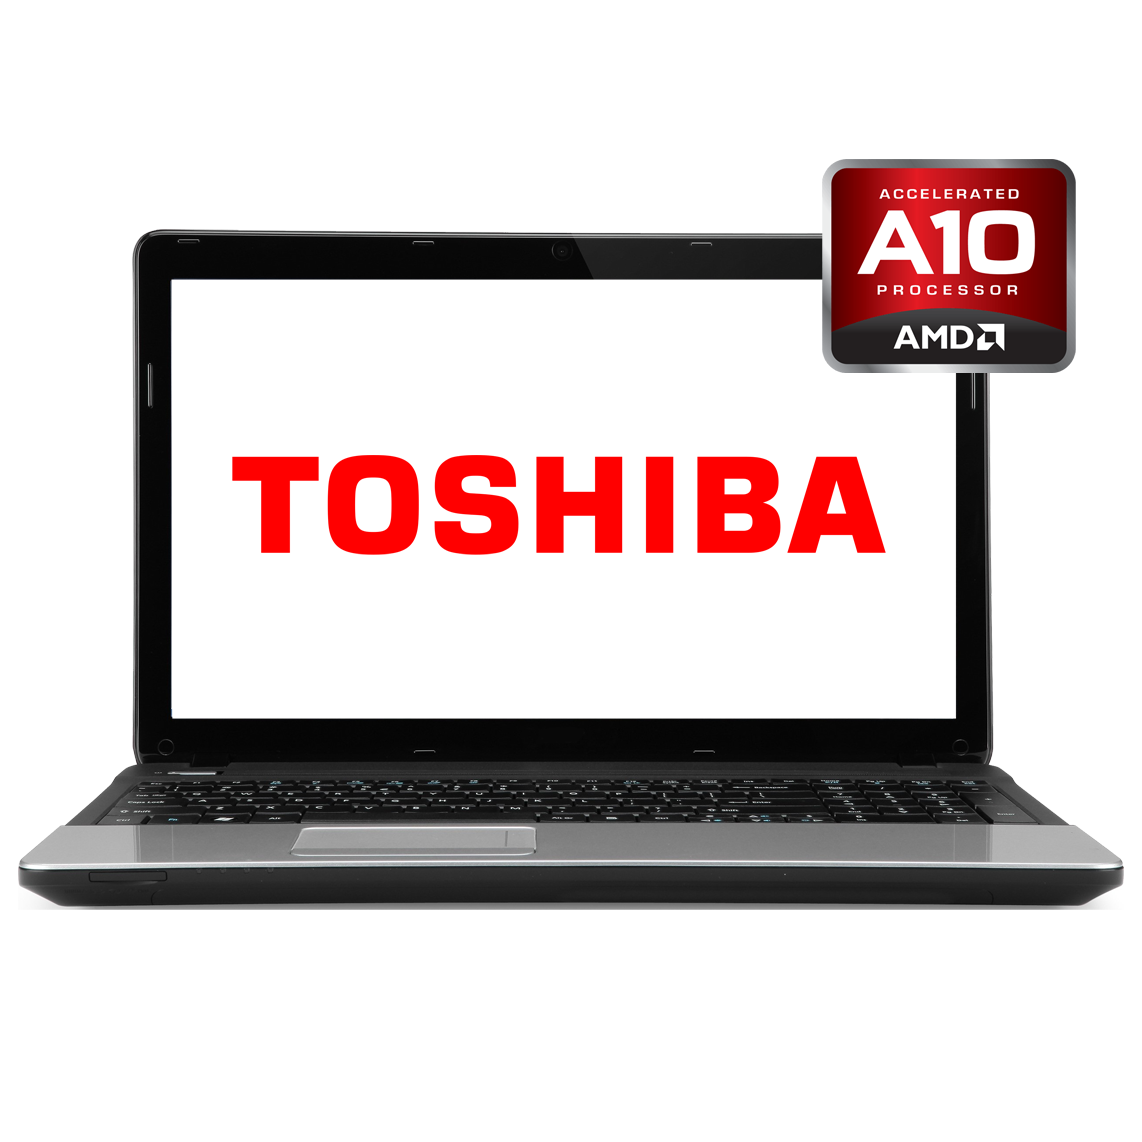 Toshiba - 13 inch AMD A10